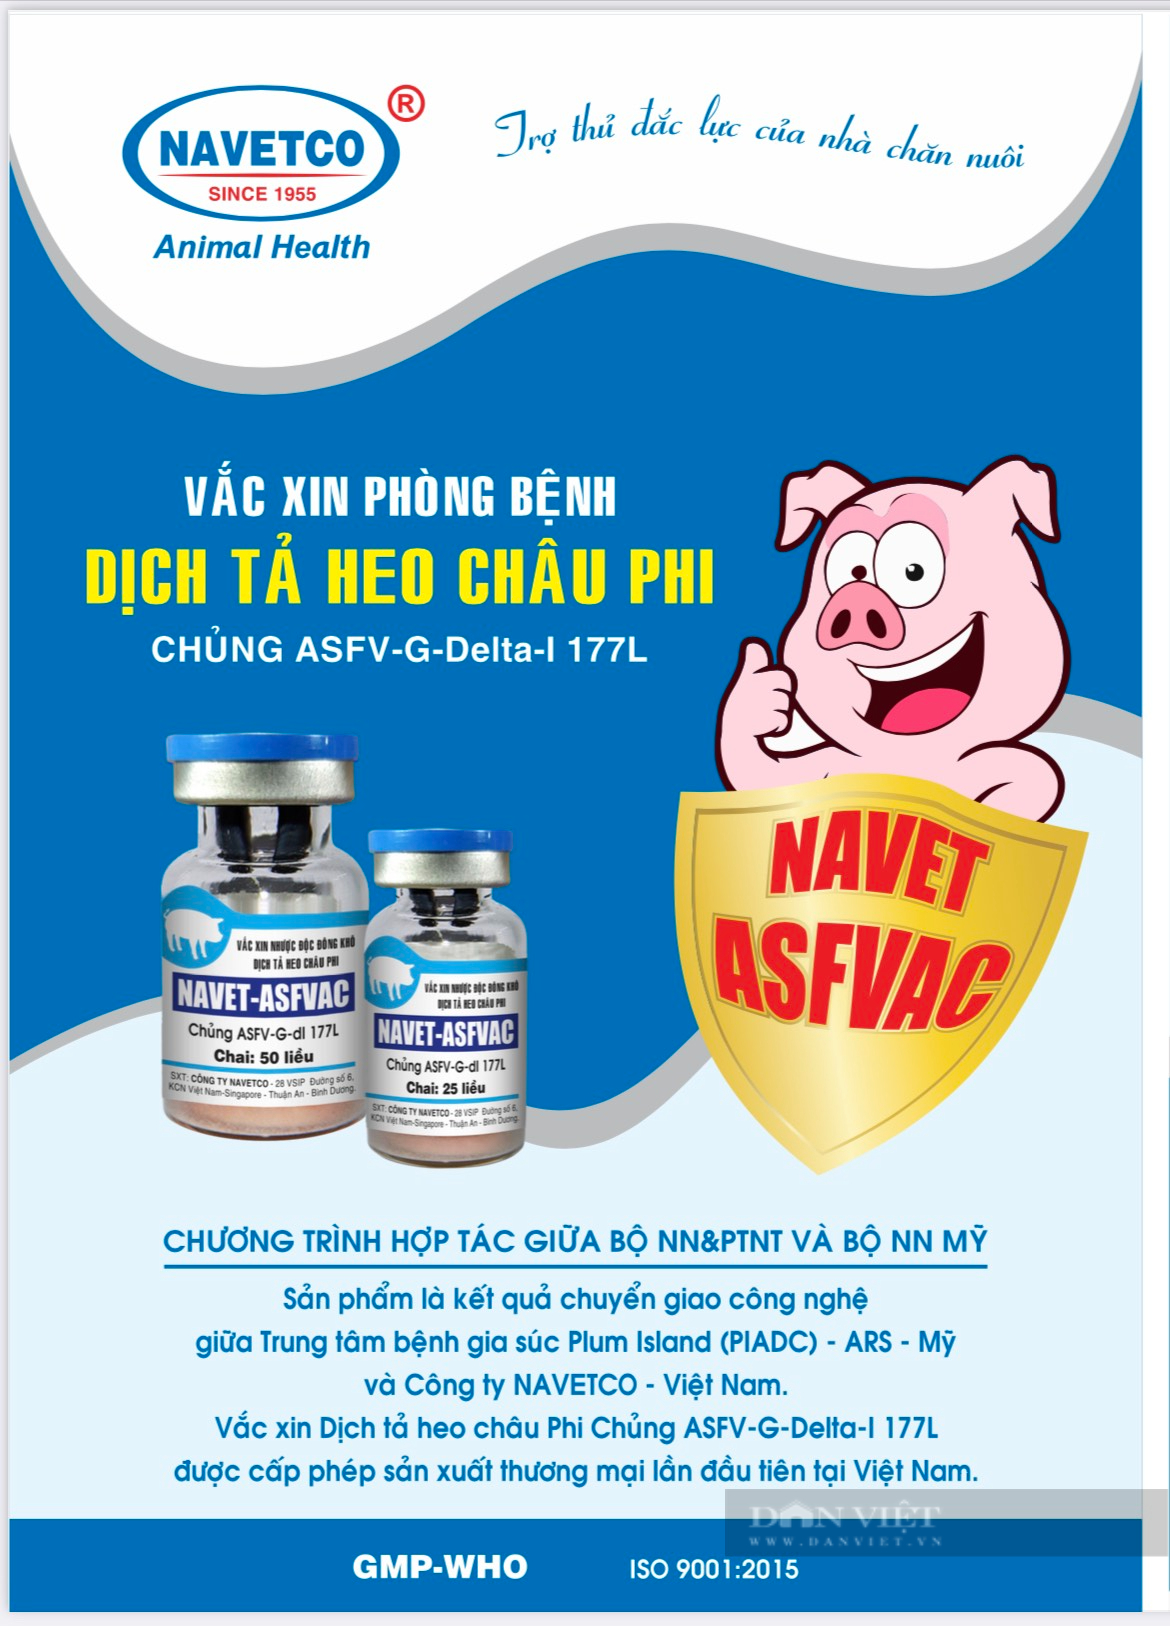 Phát hiện lợn chết sau khi tiêm vaccine dịch tả heo châu Phi, Bình Định yêu cầu dừng tiêm phòng - Ảnh 2.